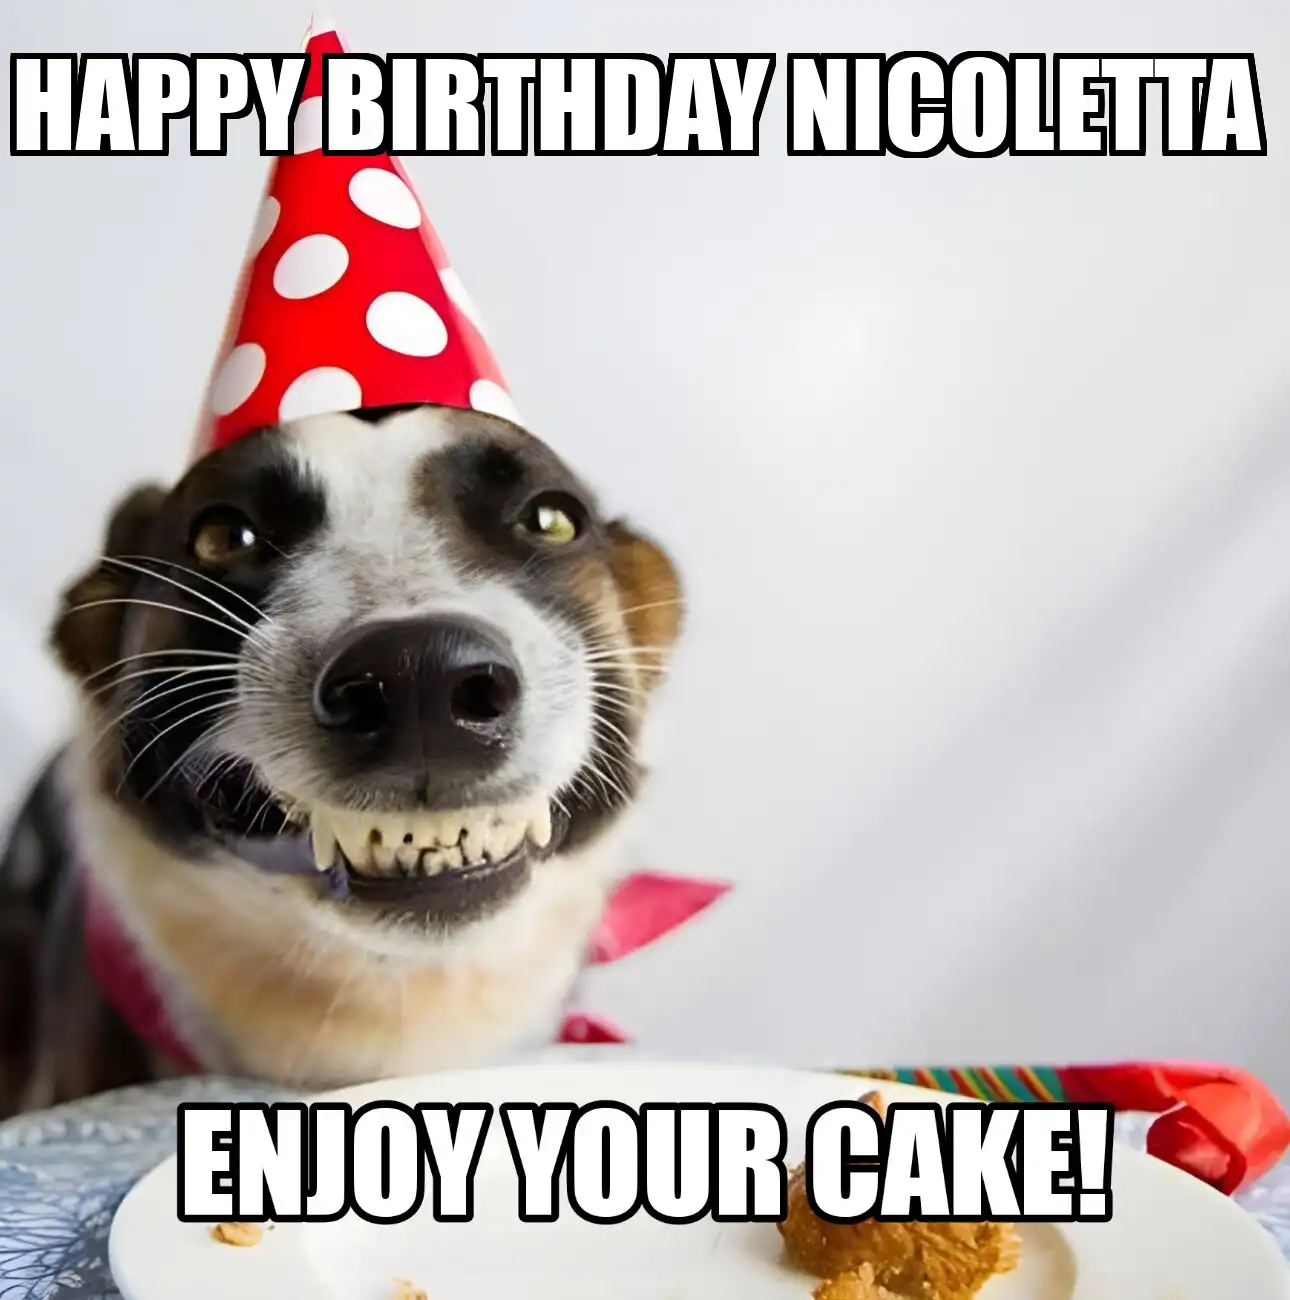 Happy Birthday Nicoletta Enjoy Your Cake Dog Meme